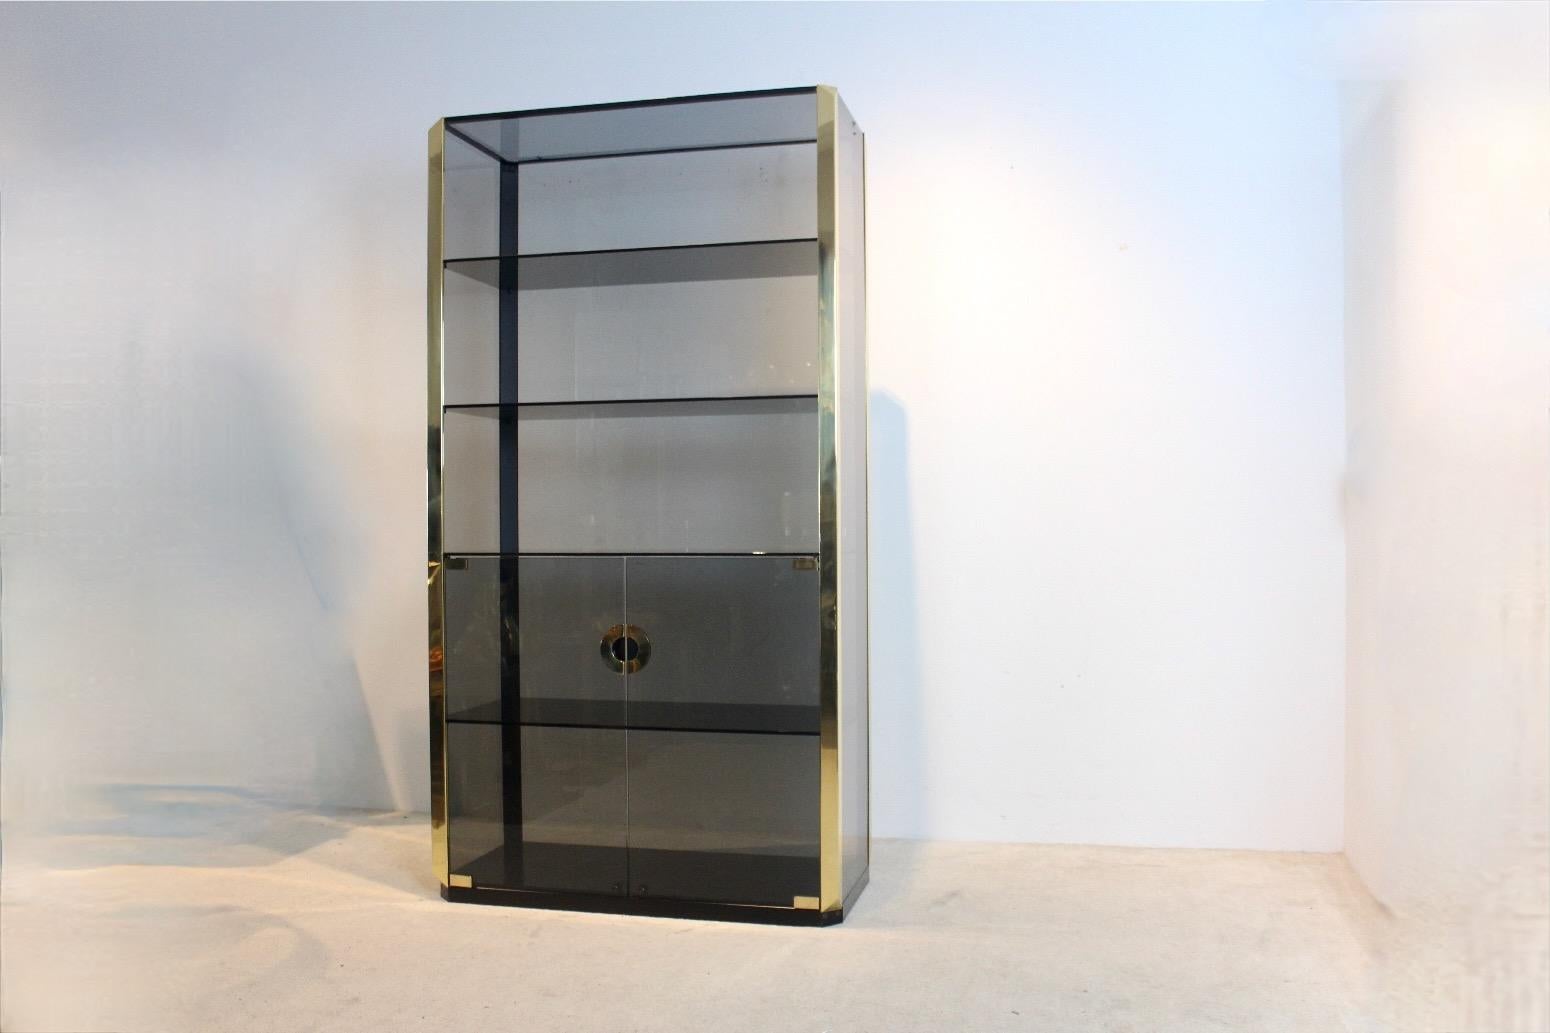 Magnifique cabinet en verre fumé conçu par Willy Rizzo pour Mario Sabot, années 1970. L'armoire est dotée d'un verre fumé et d'une quincaillerie en laiton. Le cadre de l'armoire est fait d'acier très solide. La partie inférieure peut être fermée et